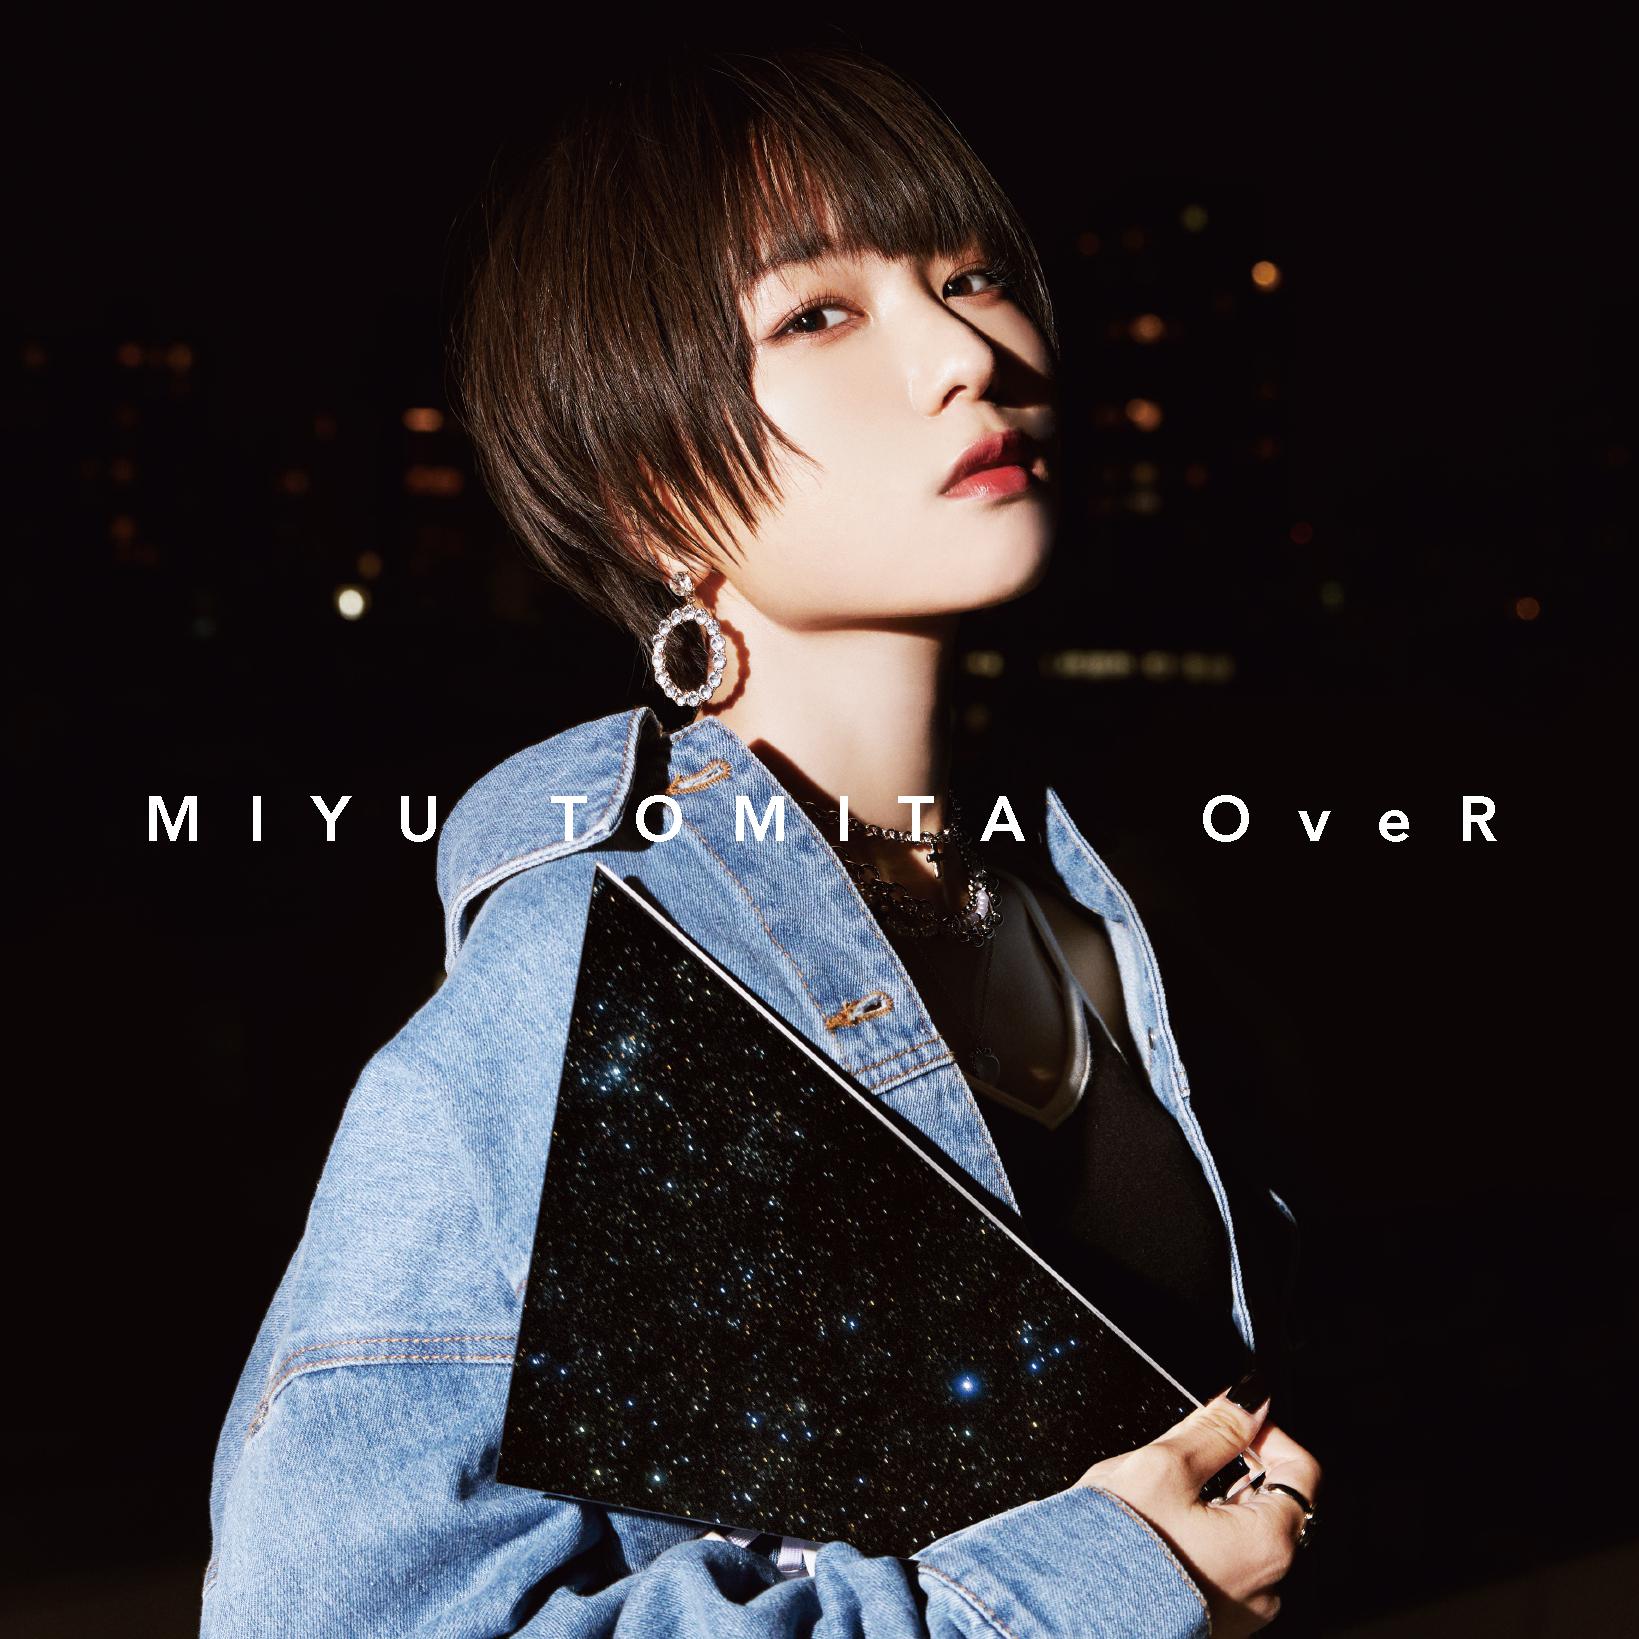 ねえ、君に歌词 歌手富田美憂-专辑OveR-单曲《ねえ、君に》LRC歌词下载